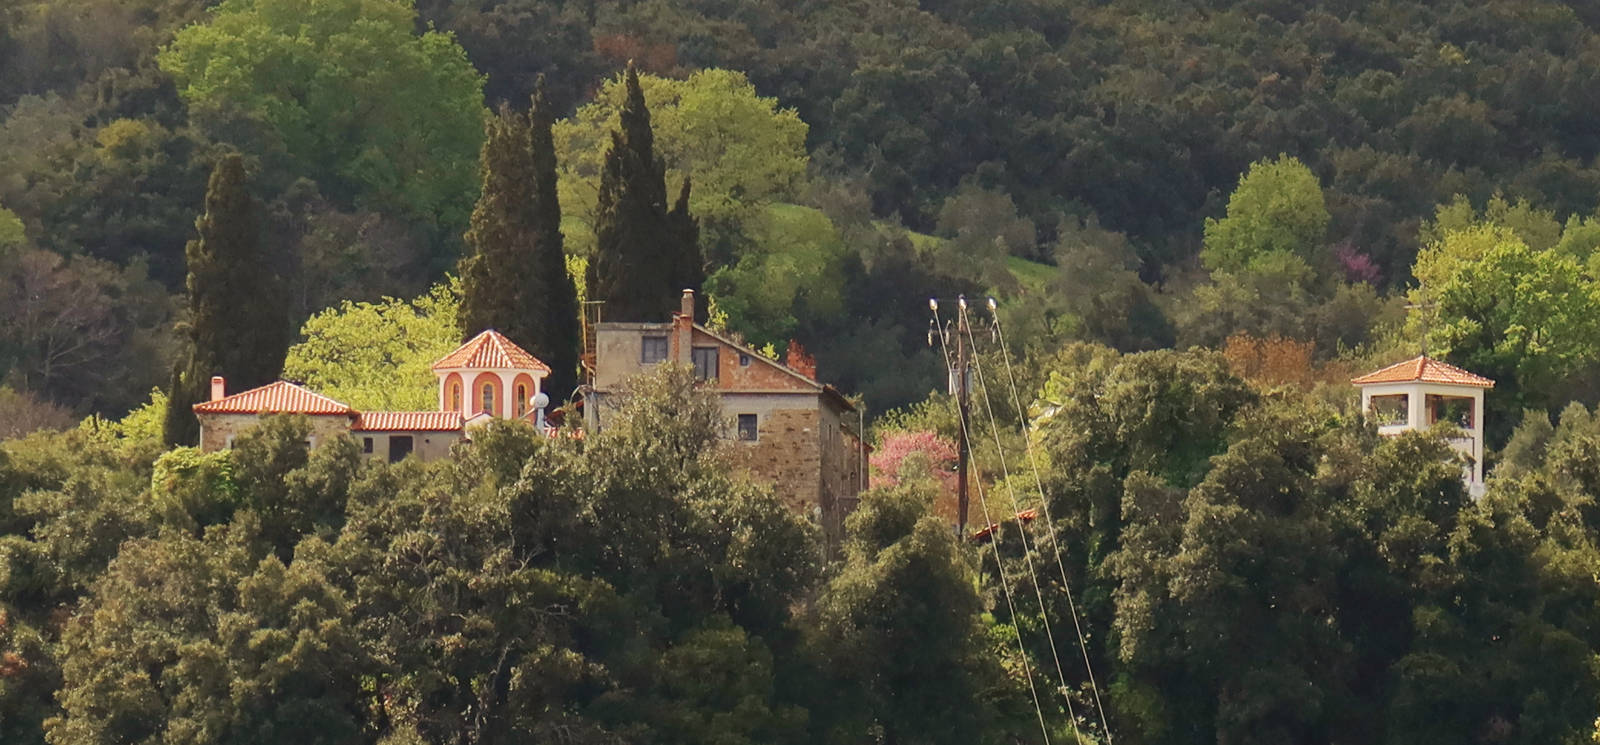 Long Pelion Trail: Agios Spyridon monastery